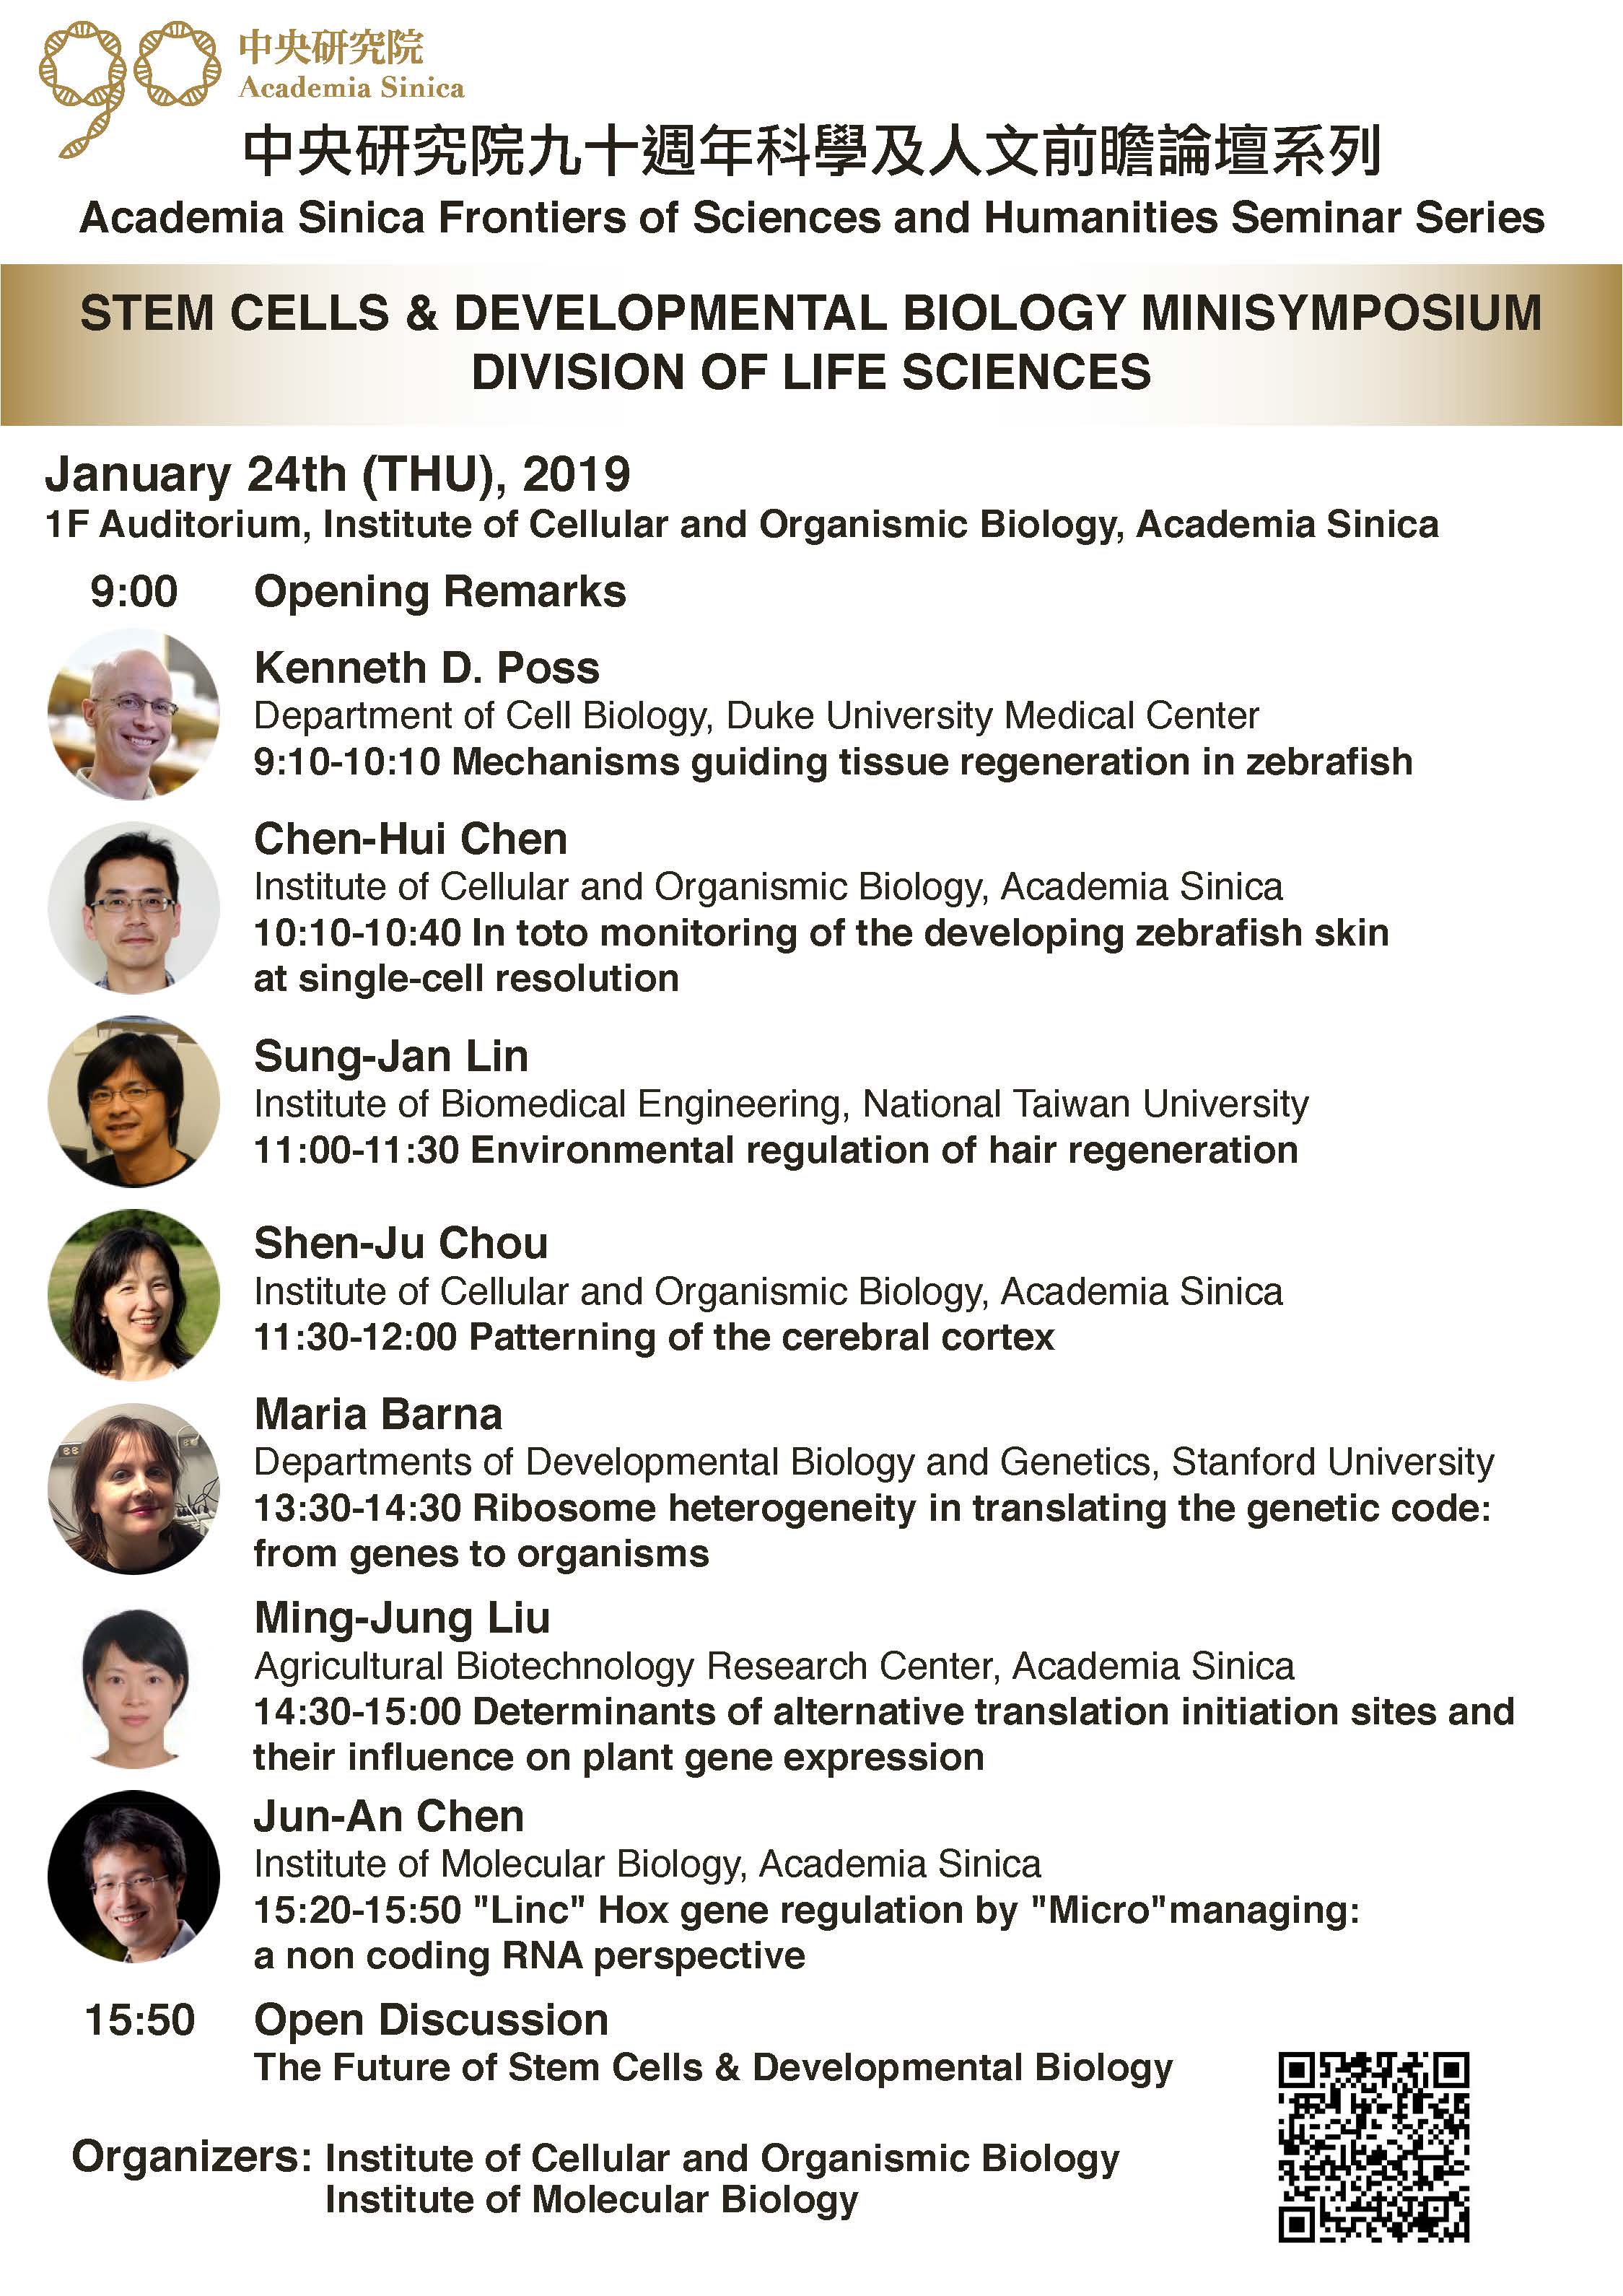 九十週年院慶 《科學及人文前瞻論壇系列-幹細胞及發育生物學小型研討會》